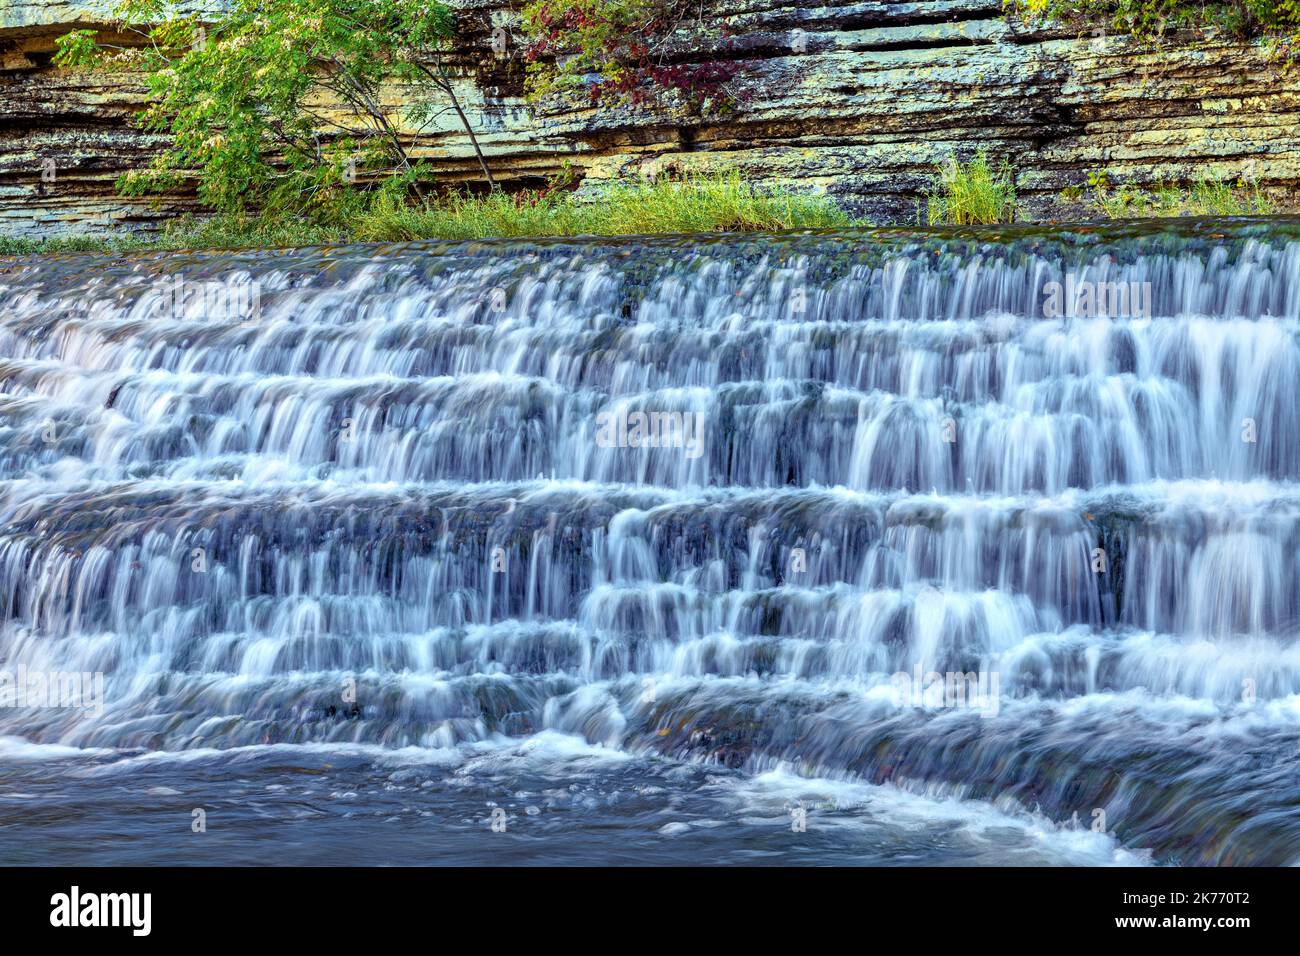 Una splendida cascata a gradini scattata con una velocità dell'otturatore ridotta per catturare il movimento scorre lungo il fiume verso una cascata più grande nelle Burges del Tennessee Foto Stock